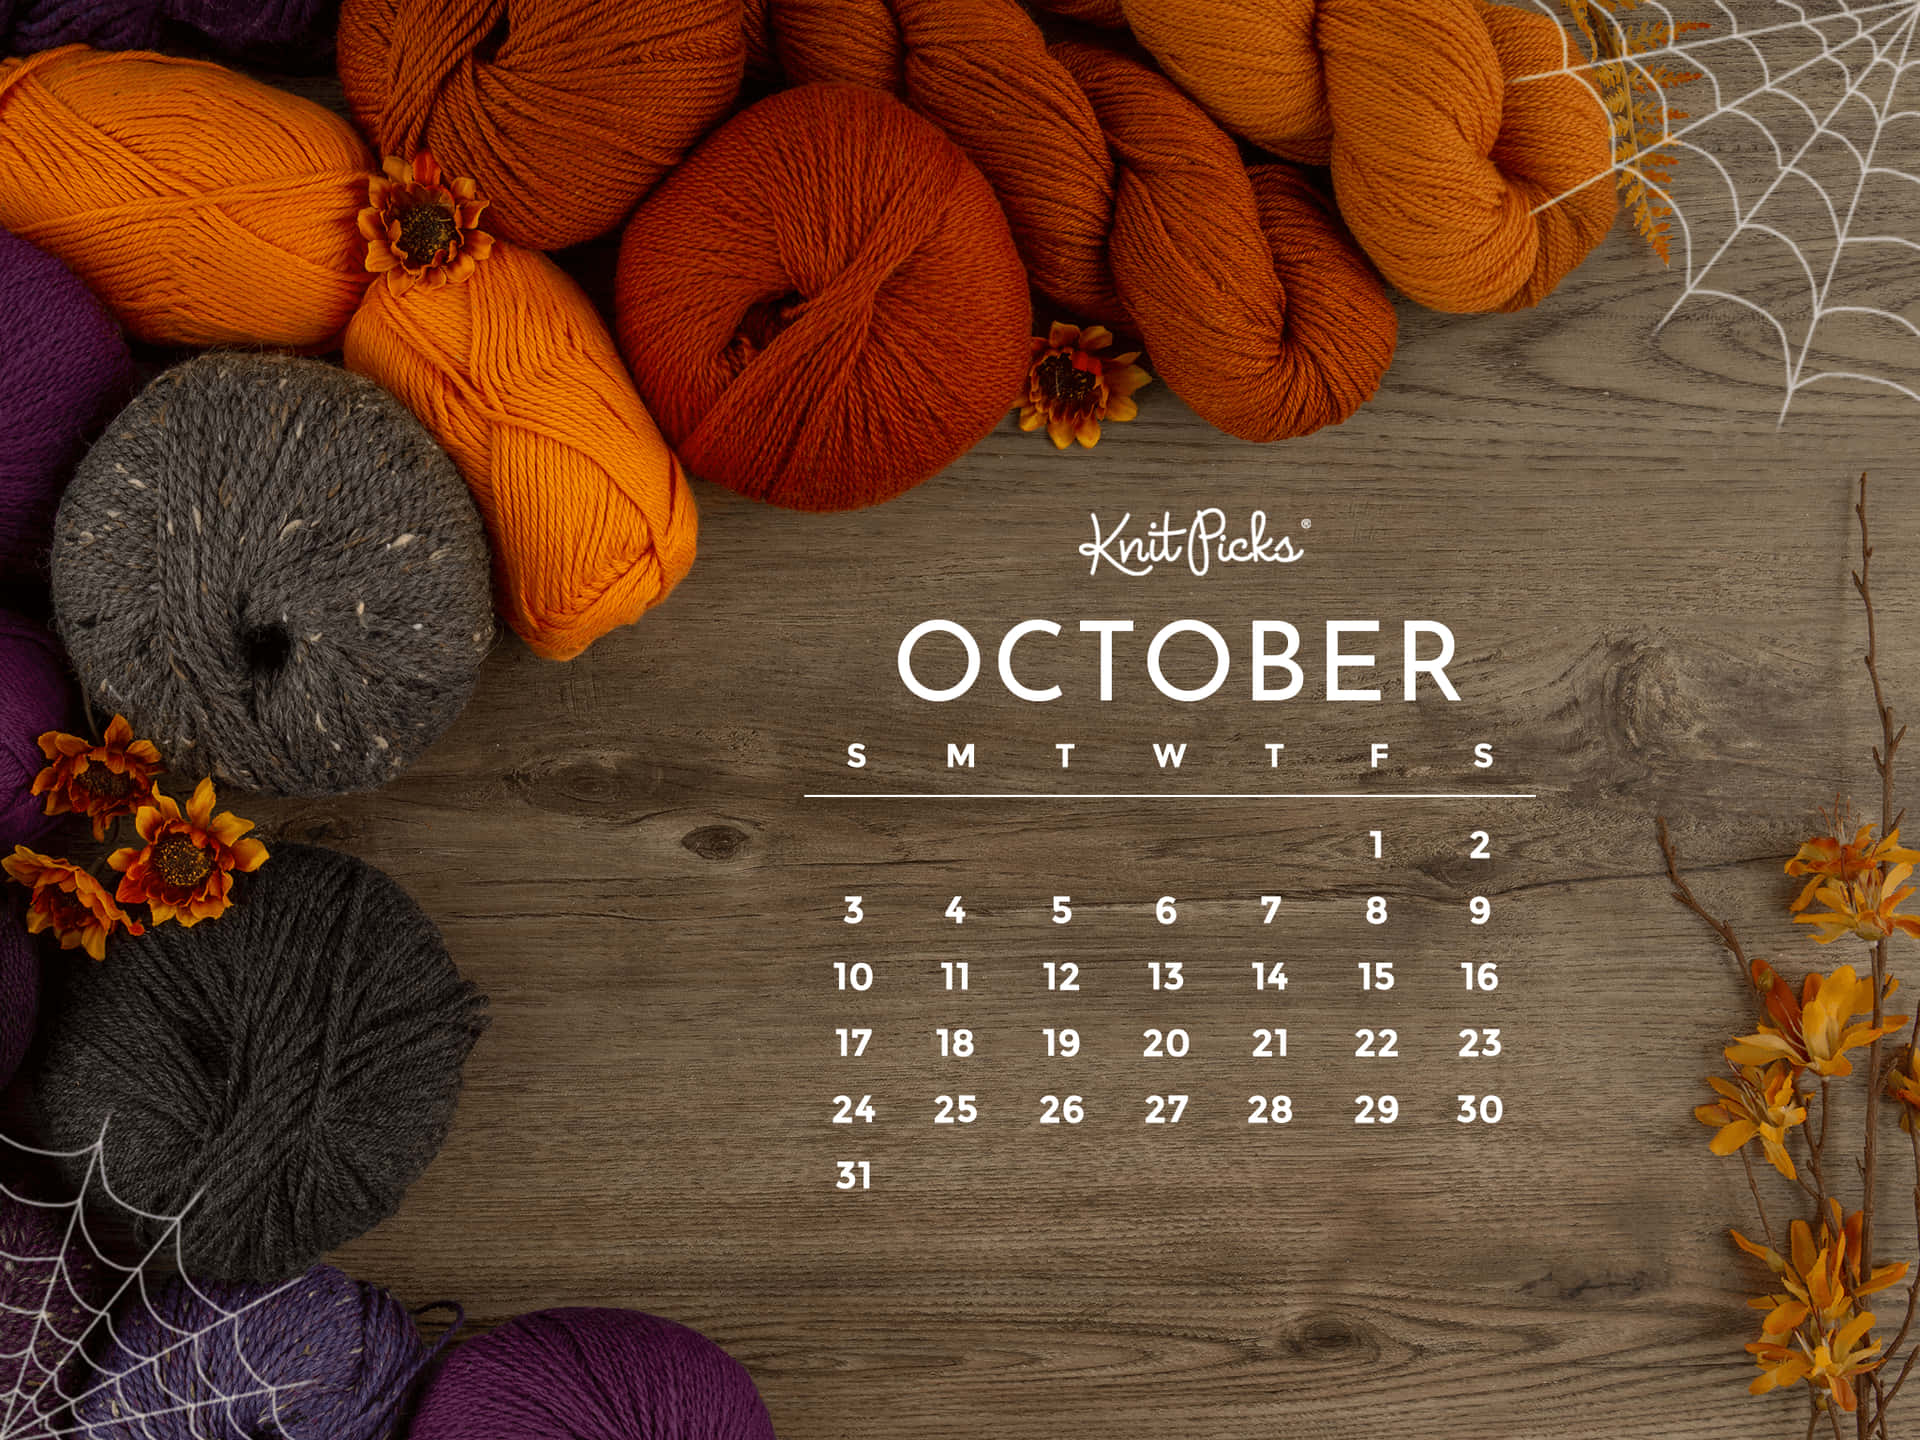 October 2021 Calendar Pictures Wallpaper